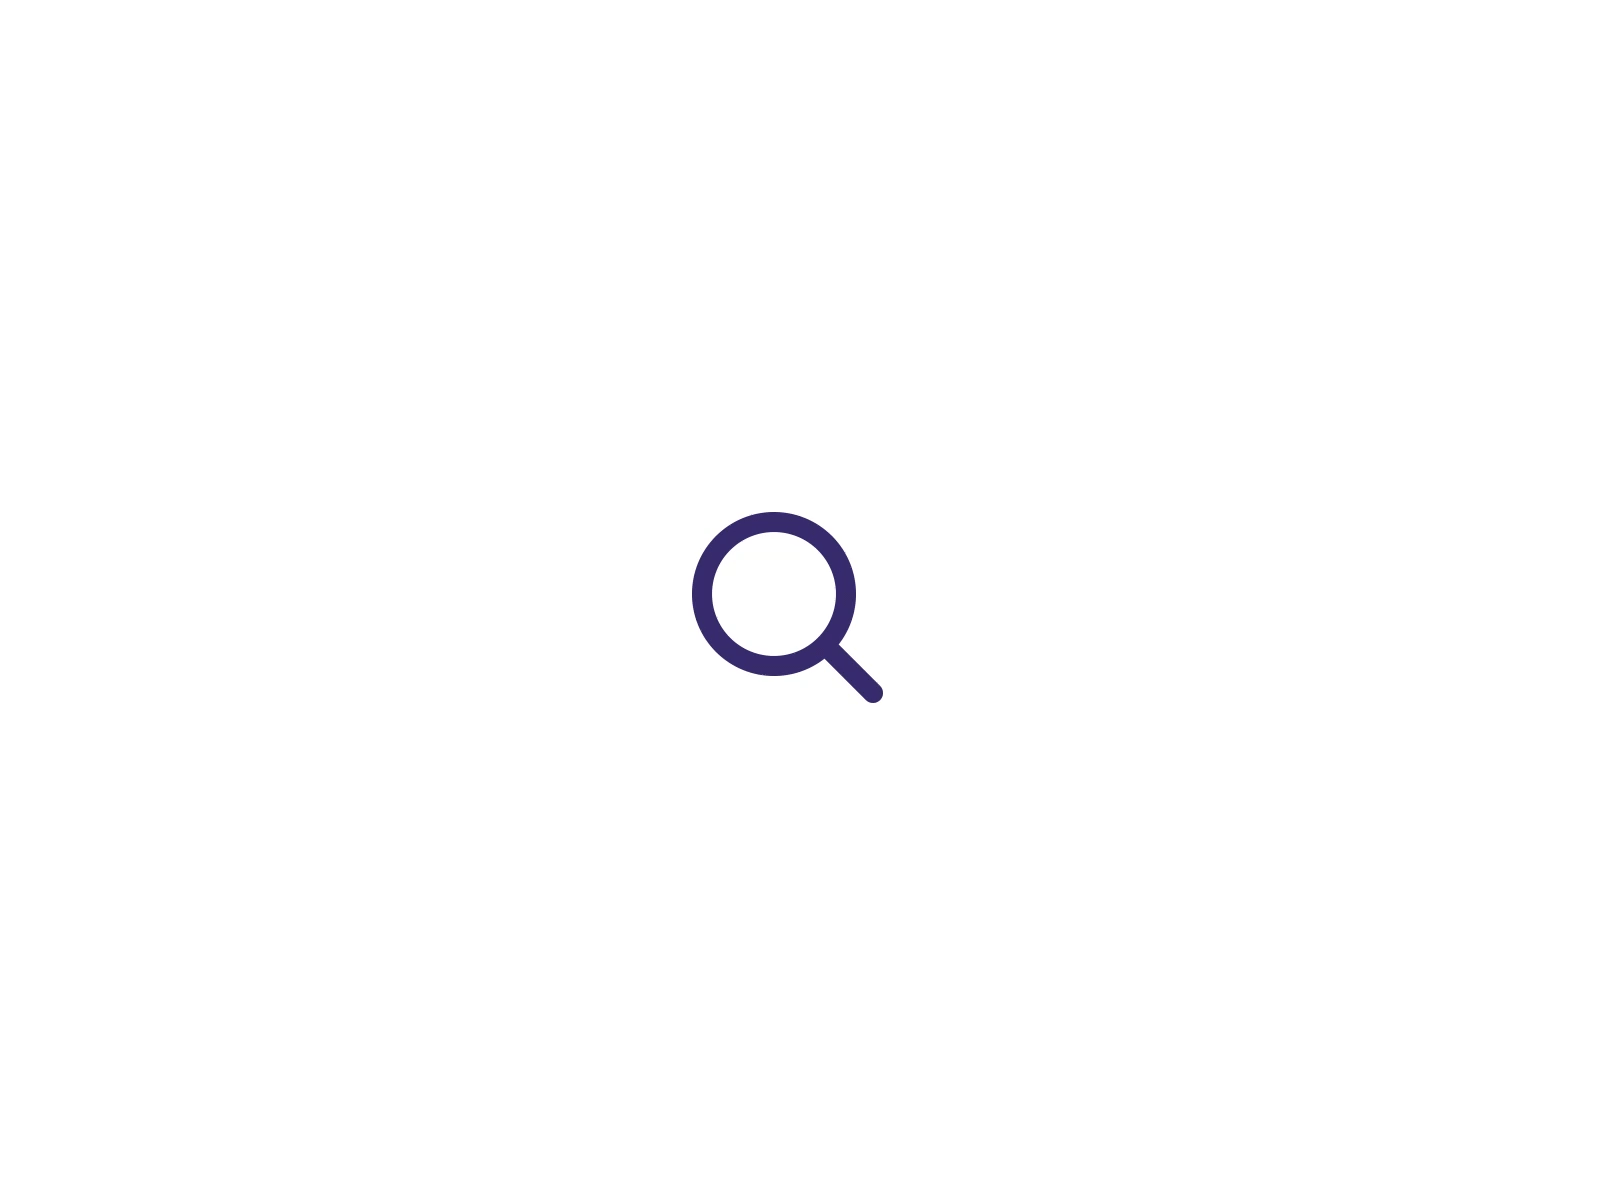 a search icon